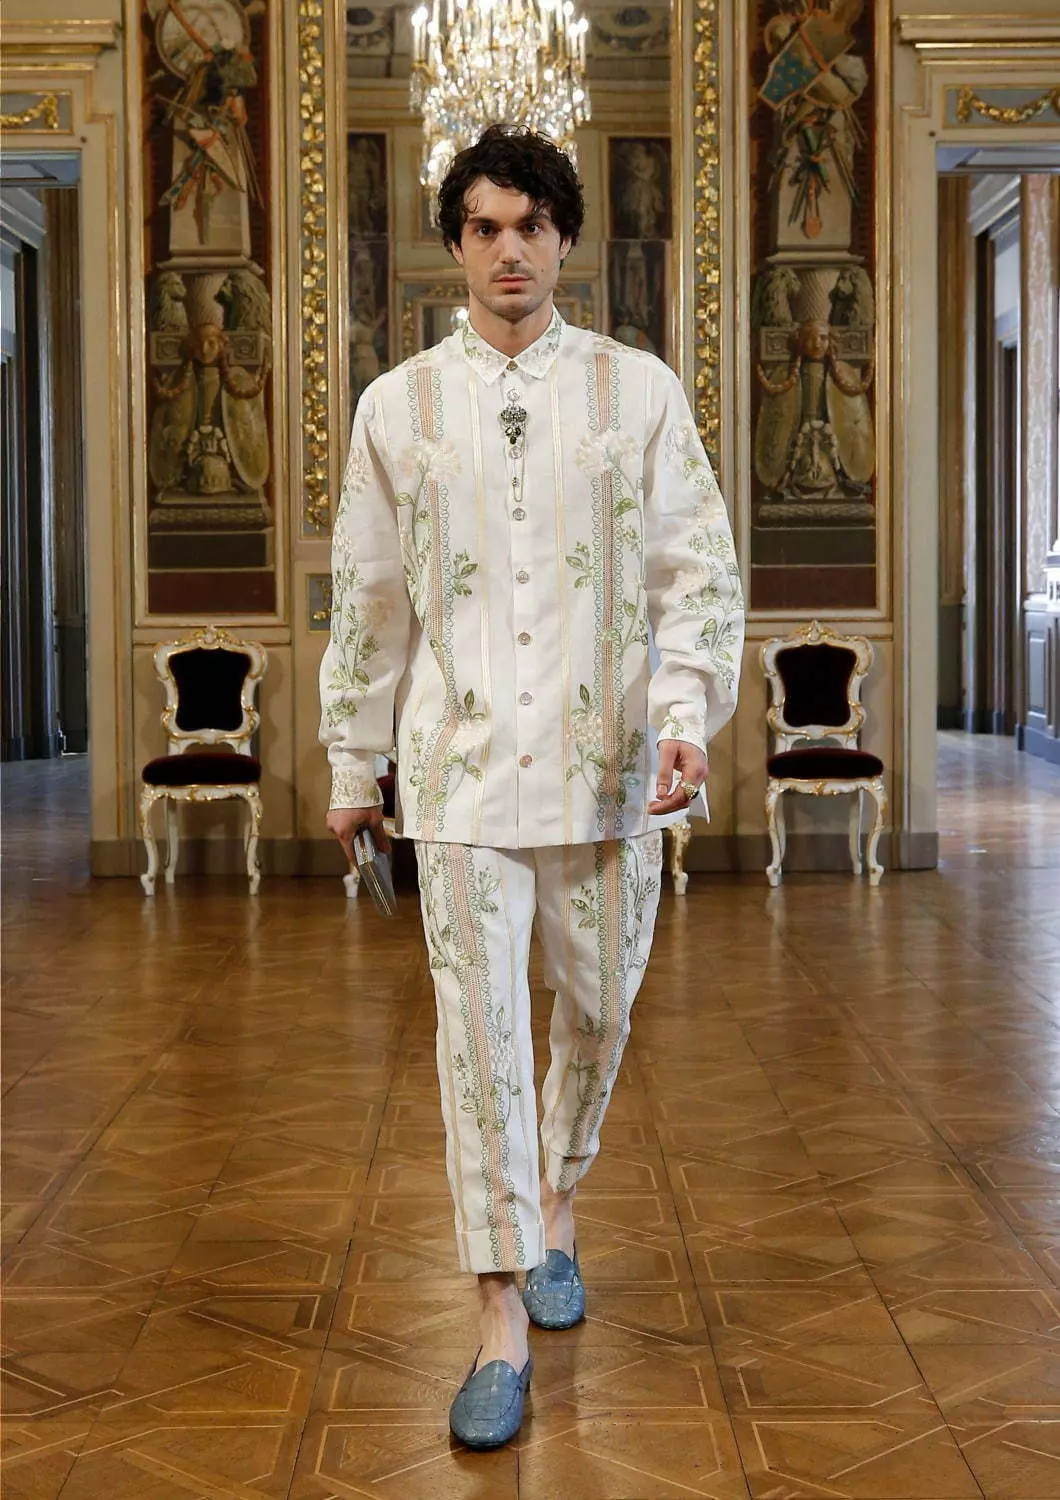 Dolce & Gabbana Alta Sartoria Menswear Collection Lulju 2020 53602_58